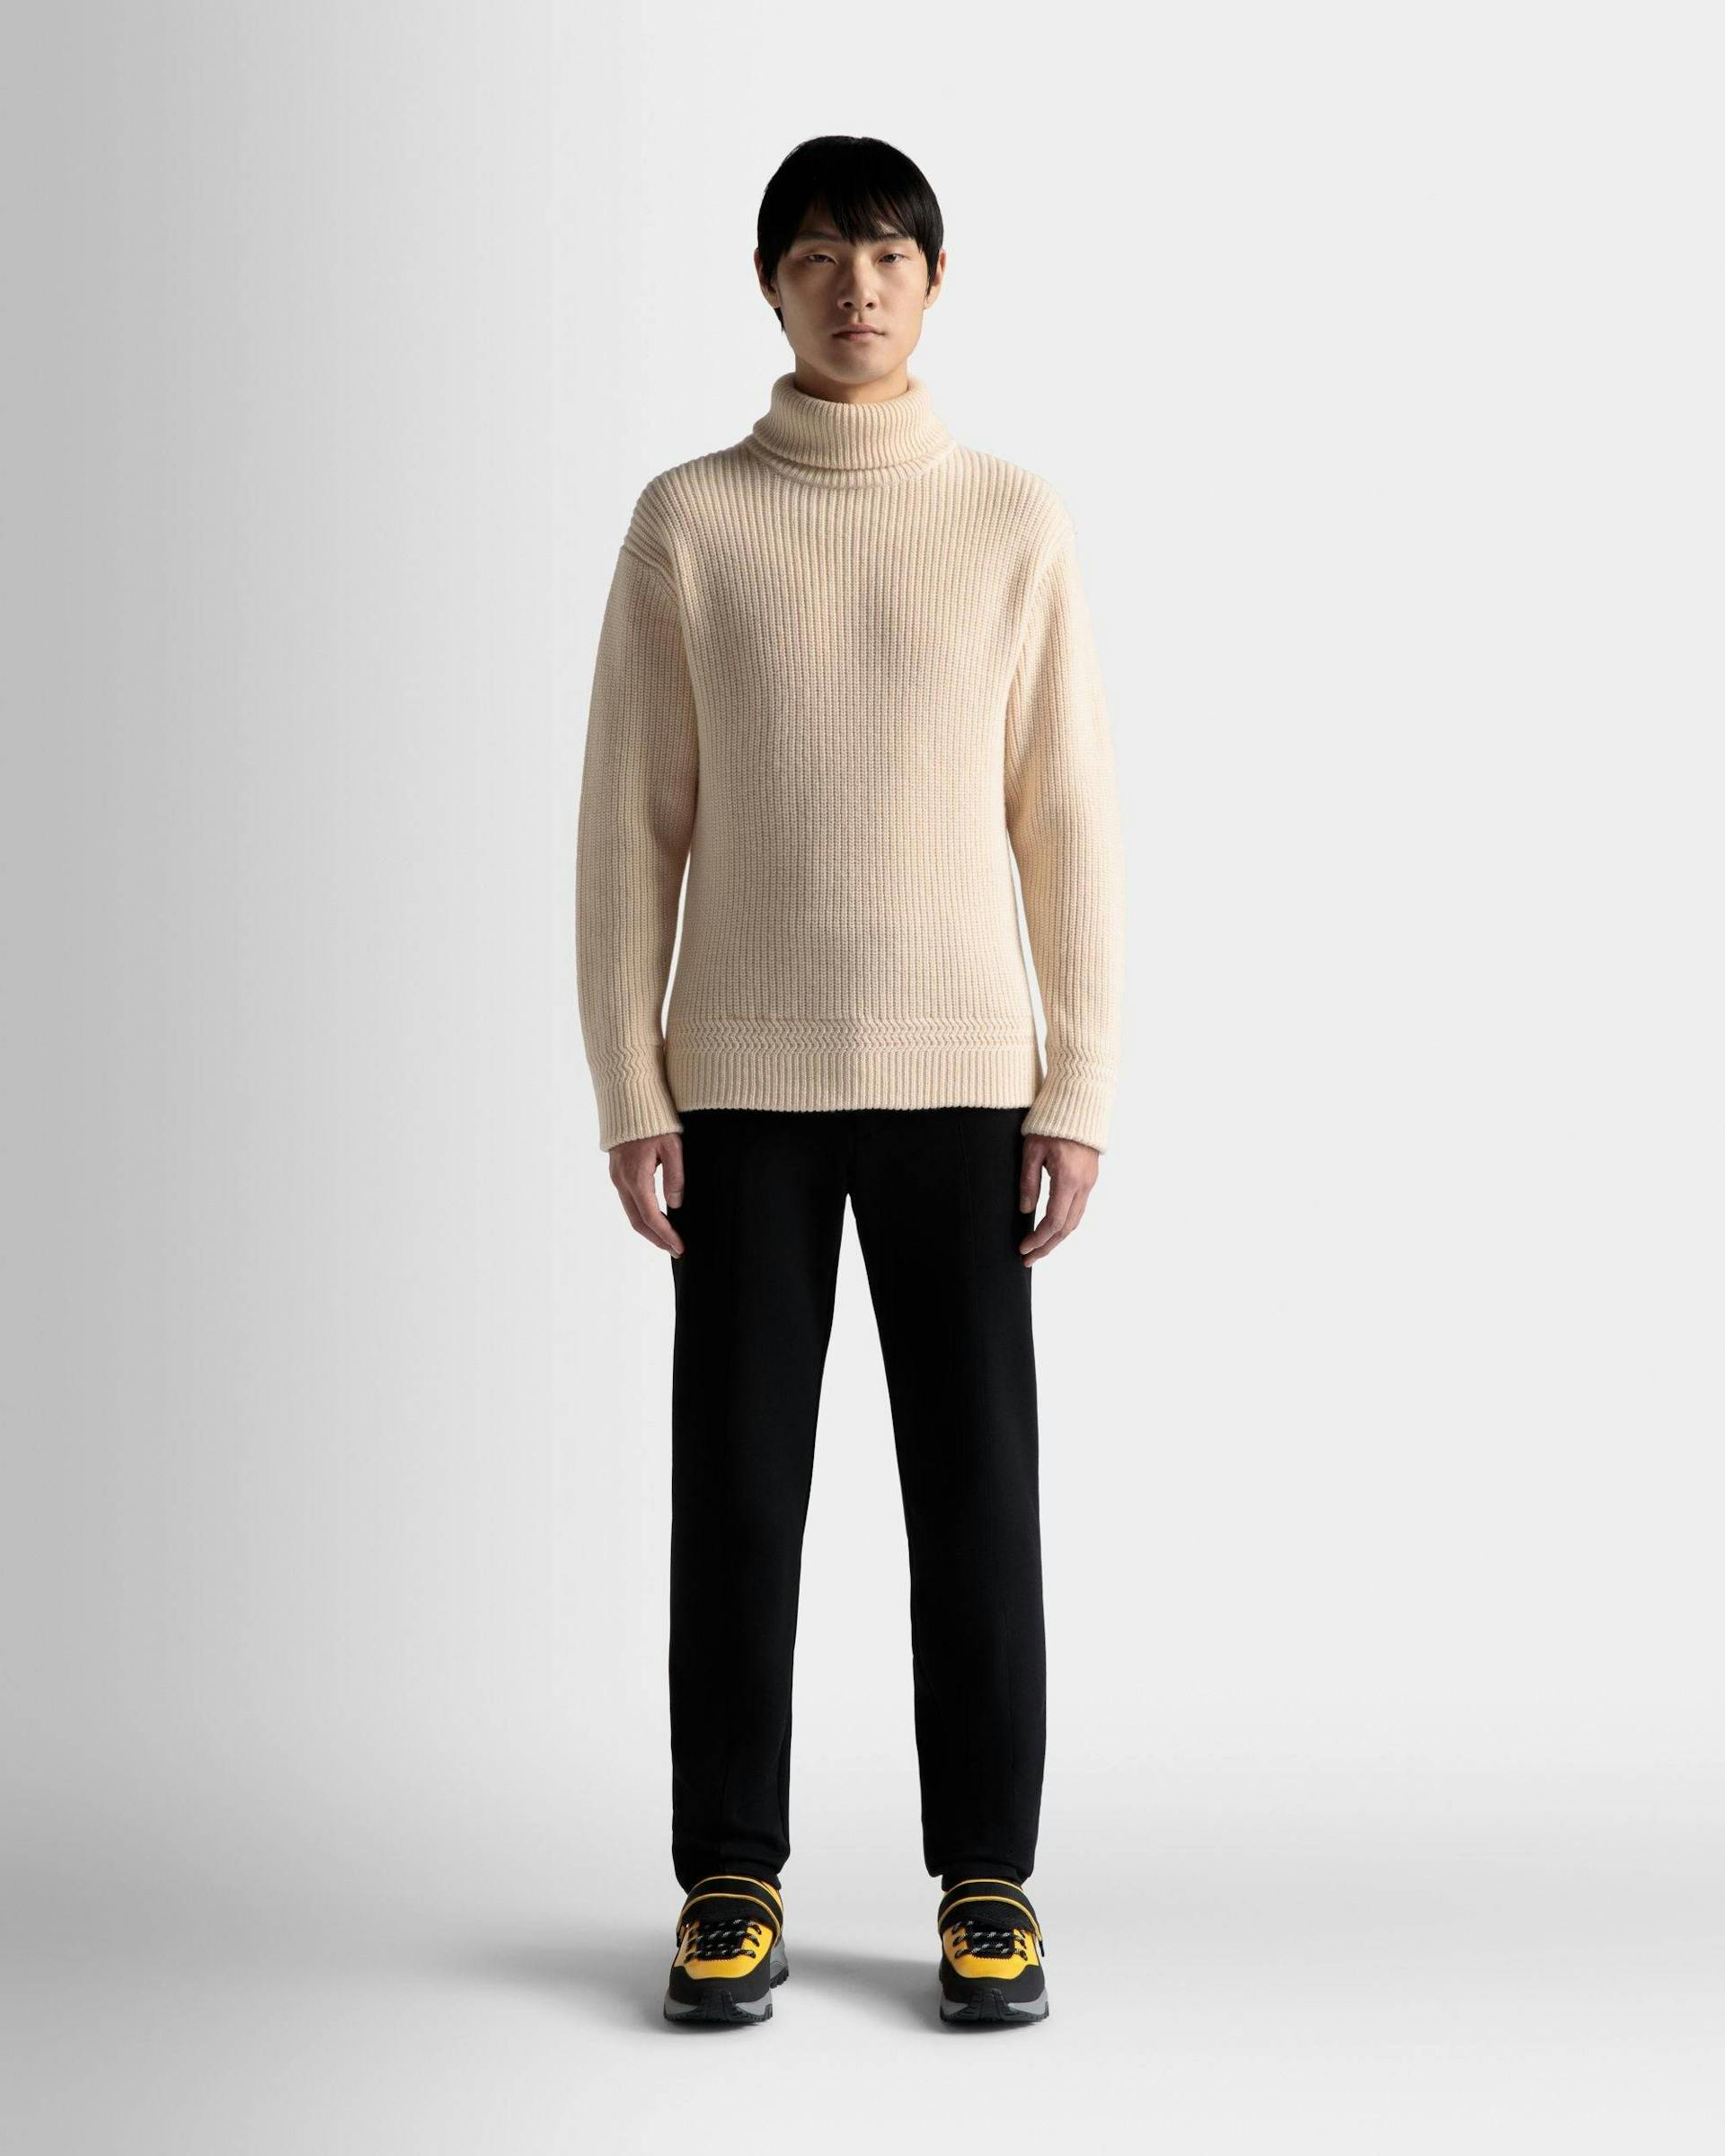 Men's Turtleneck Sweater In Beige Wool | Bally | On Model Front